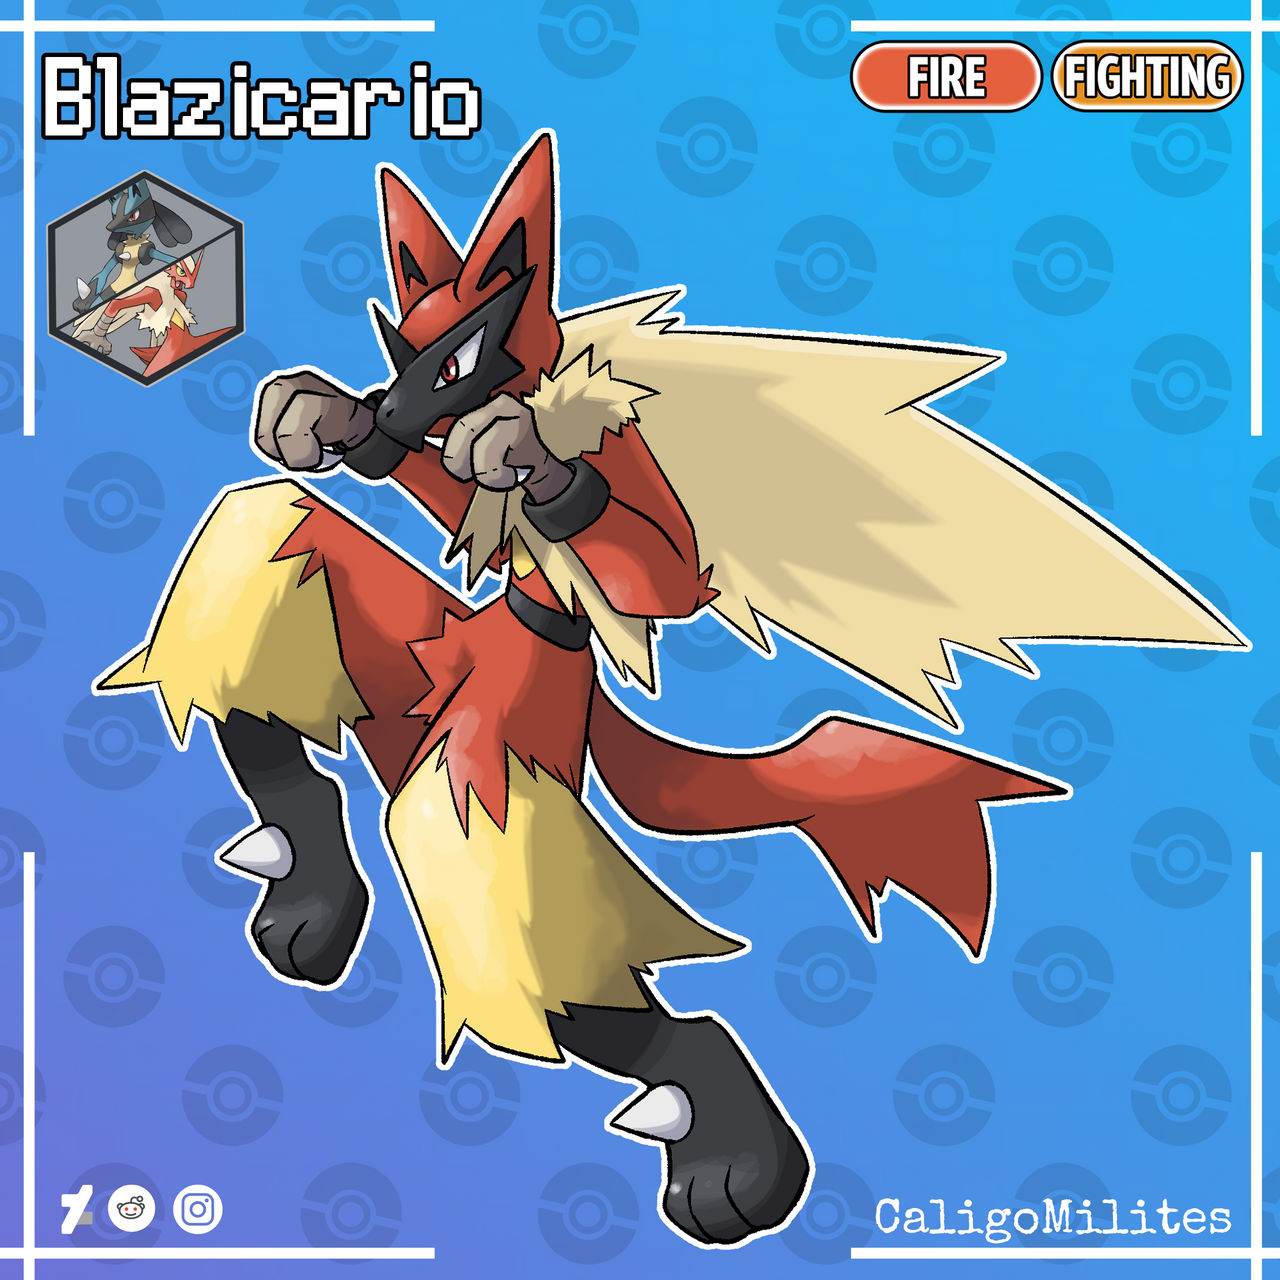 15 best Fighting-type Pokemon ever: Lucario, Blaziken & more - Dexerto